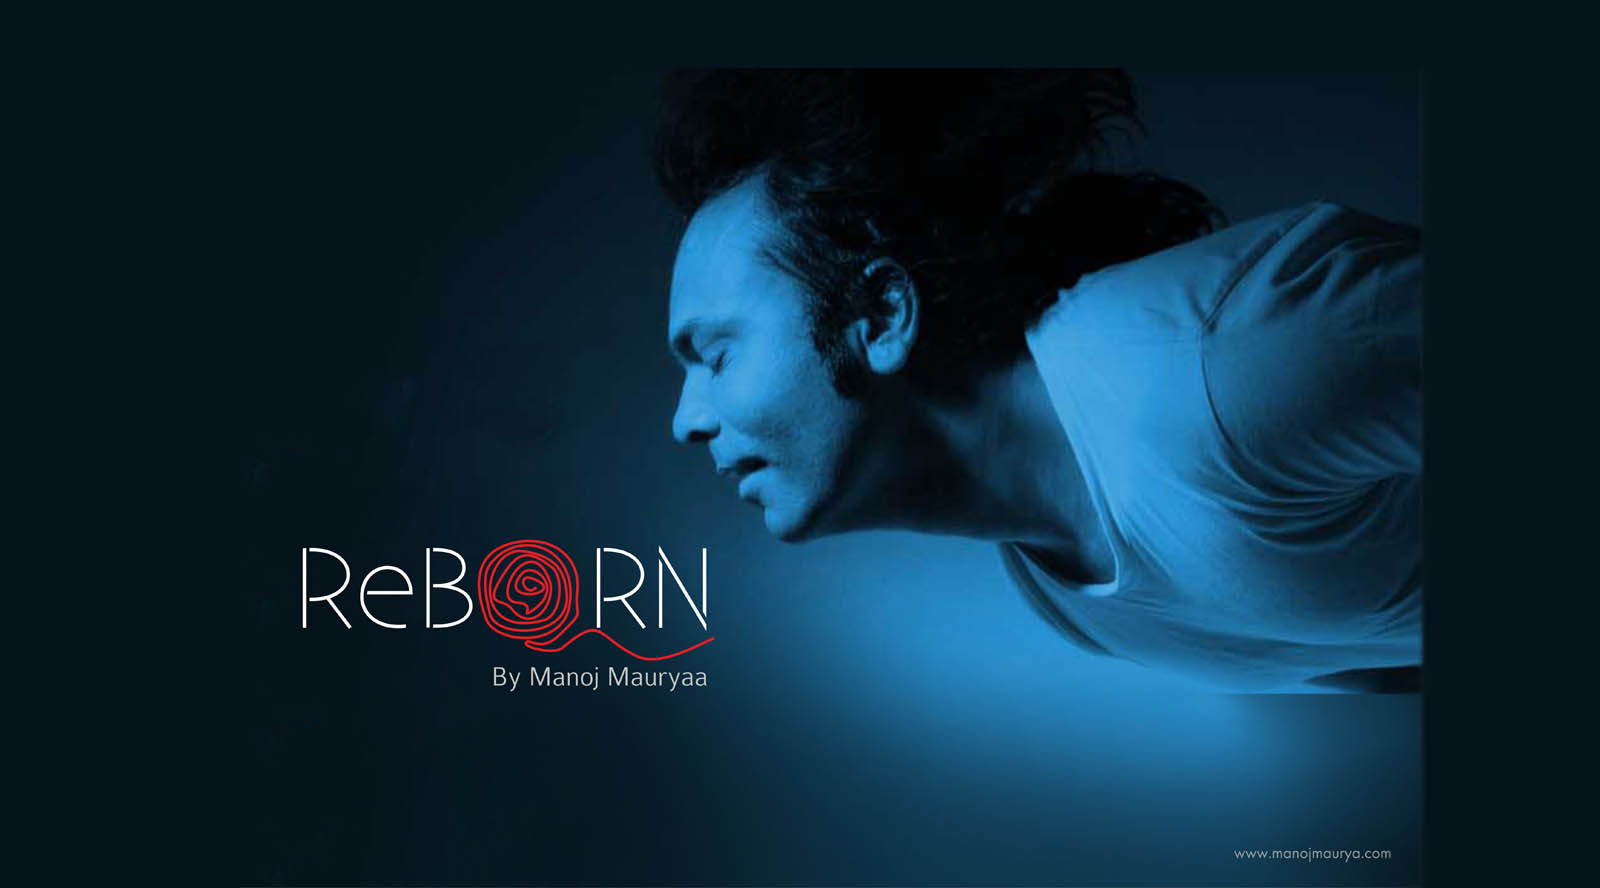 Reborn By Manoj Maurya